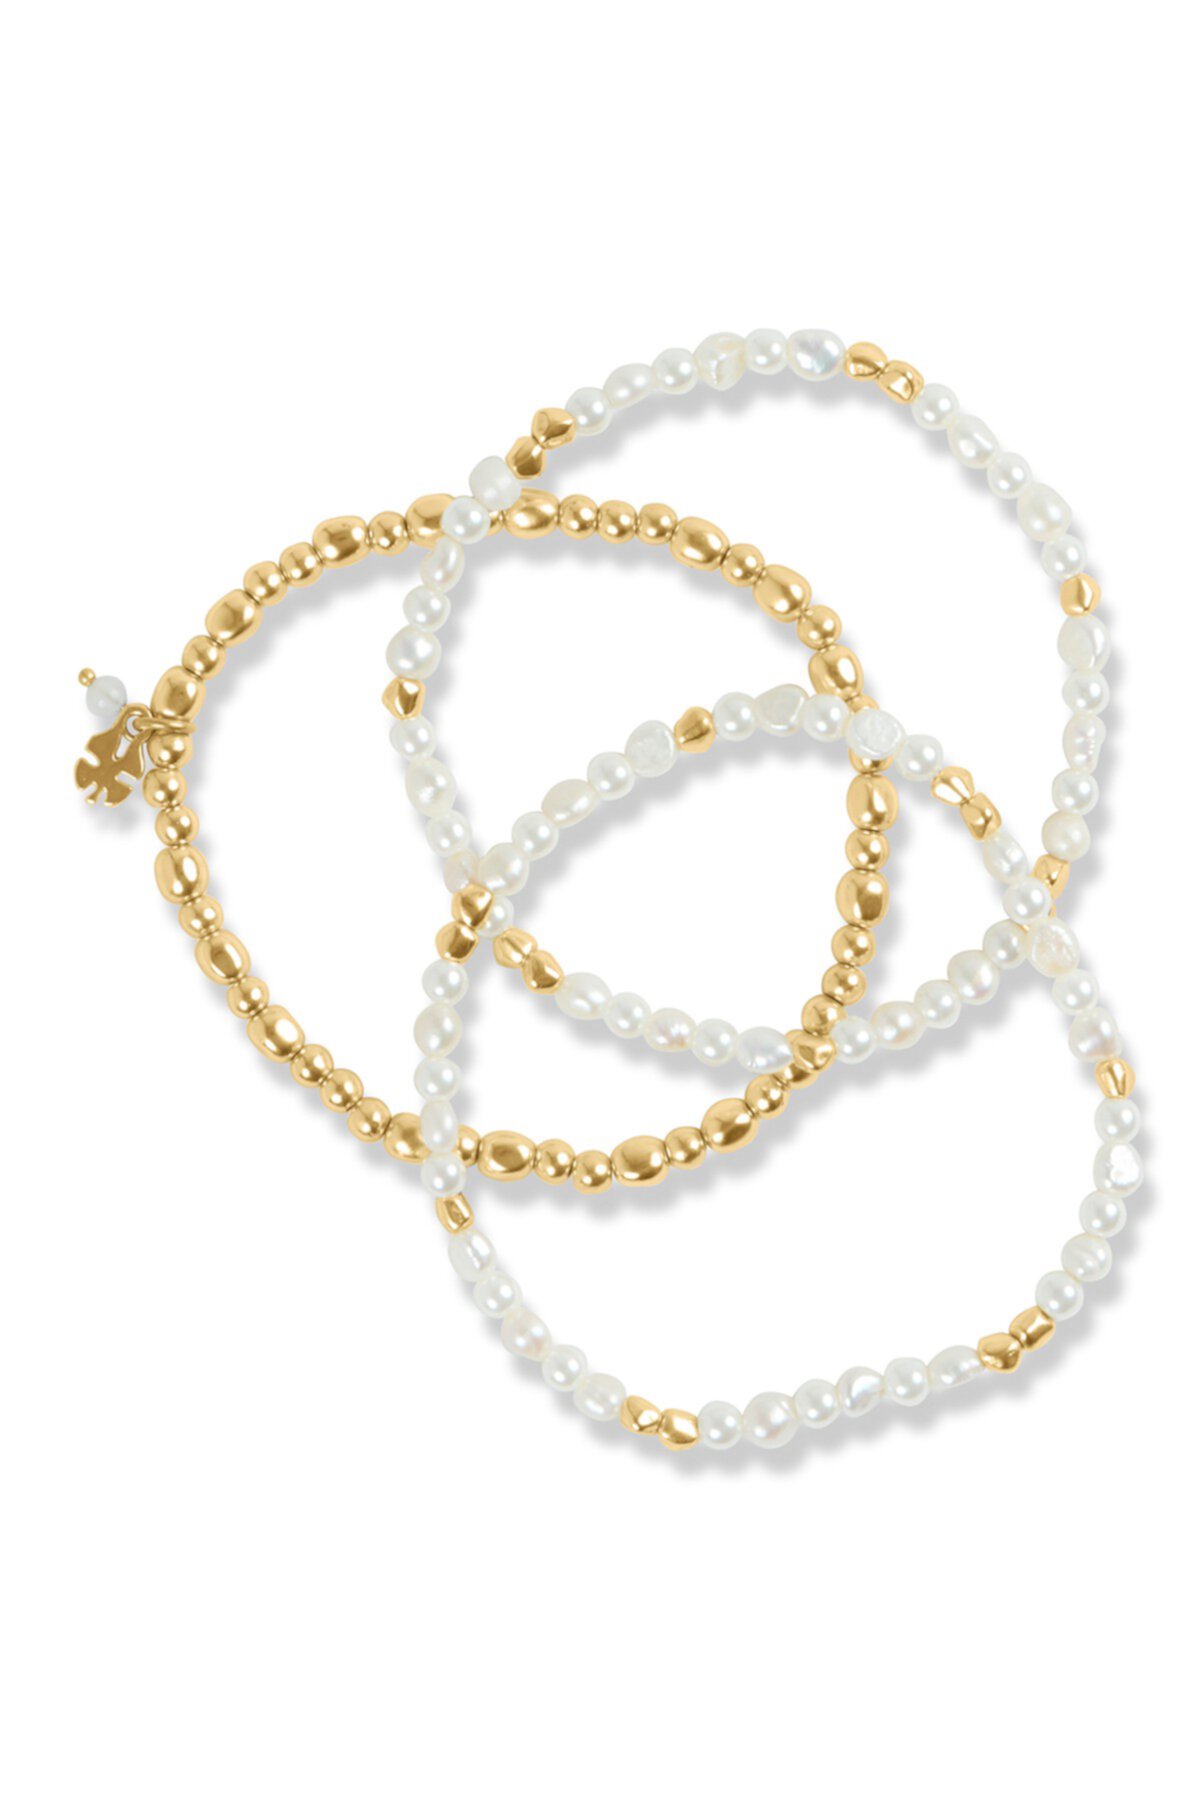 Imitation & Freshwater Pearl Beaded Bracelet Set - Set of 3 Lucky Brand